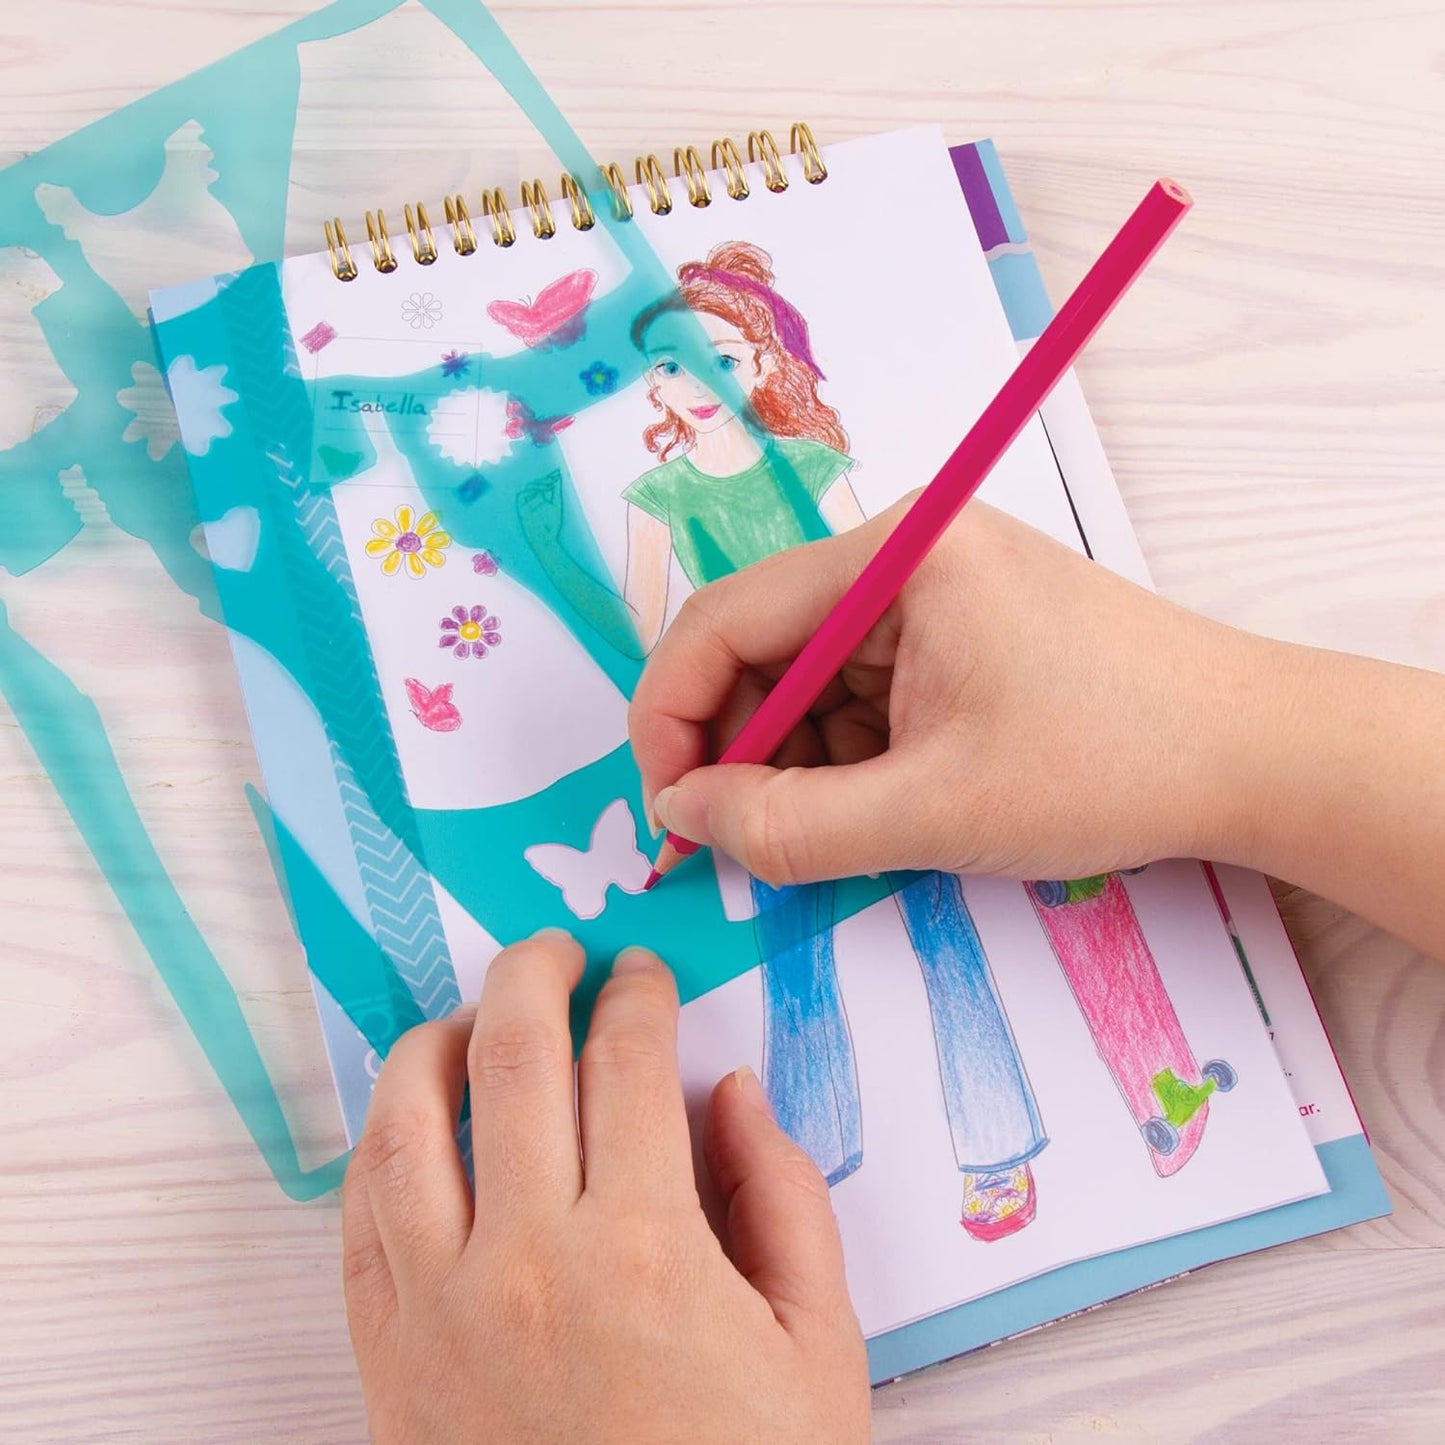 Make It Real - Fashion Design Sketchbook: Blooming Vibes - Fashion Sketchbook for Girls - Kids Fashion Design Kit